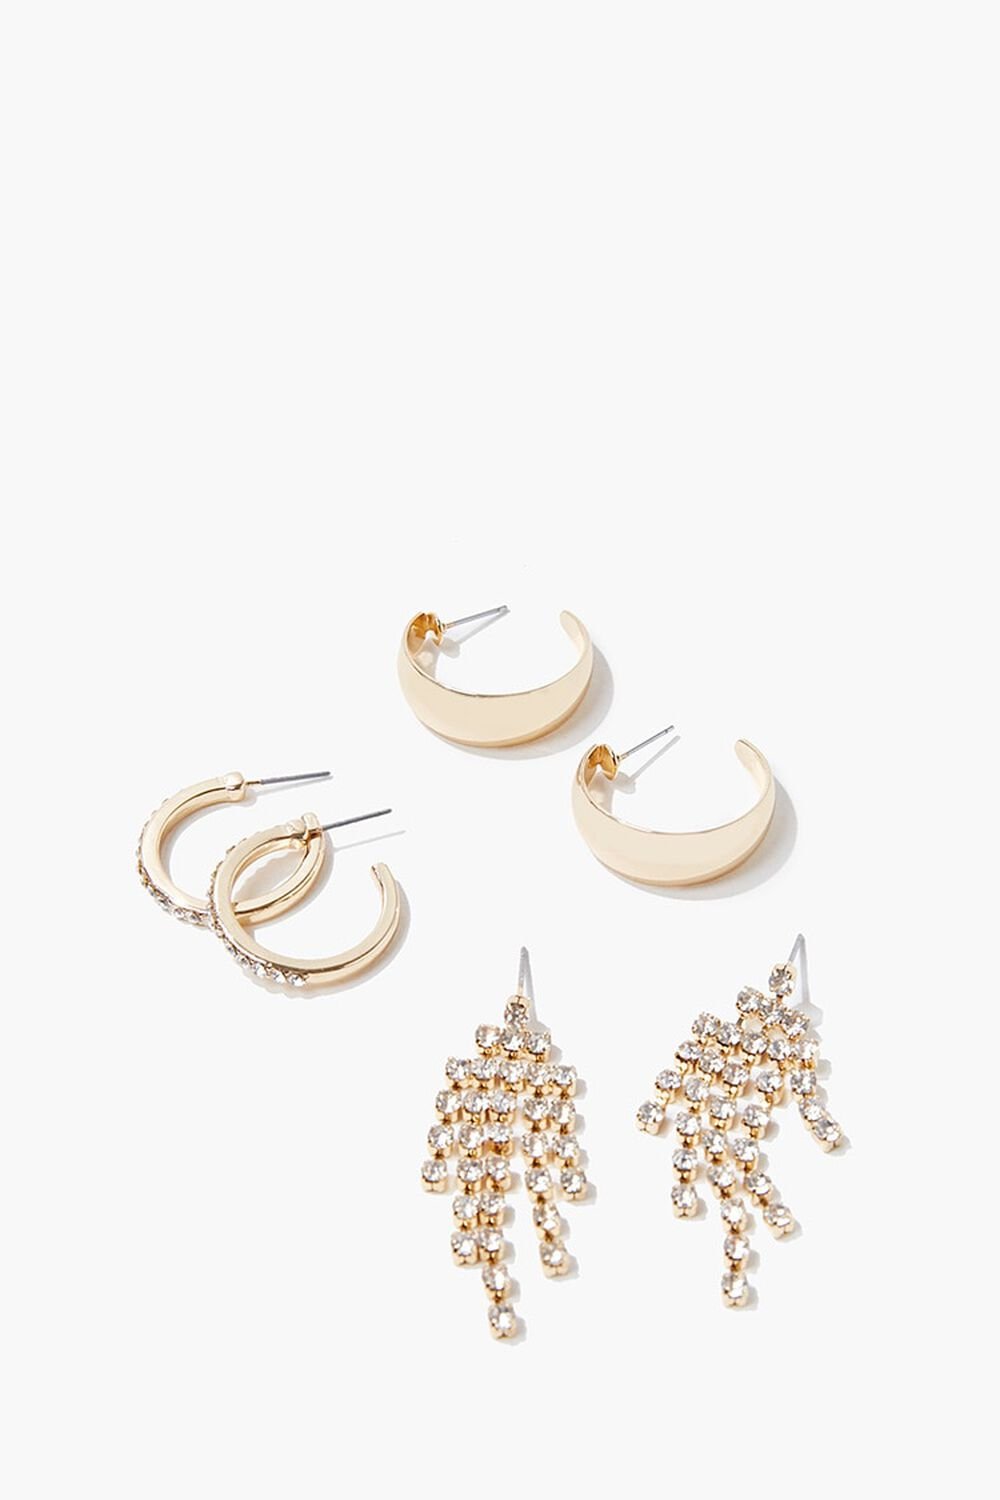 GOLD/CLEAR Rhinestone Earring Set, image 1